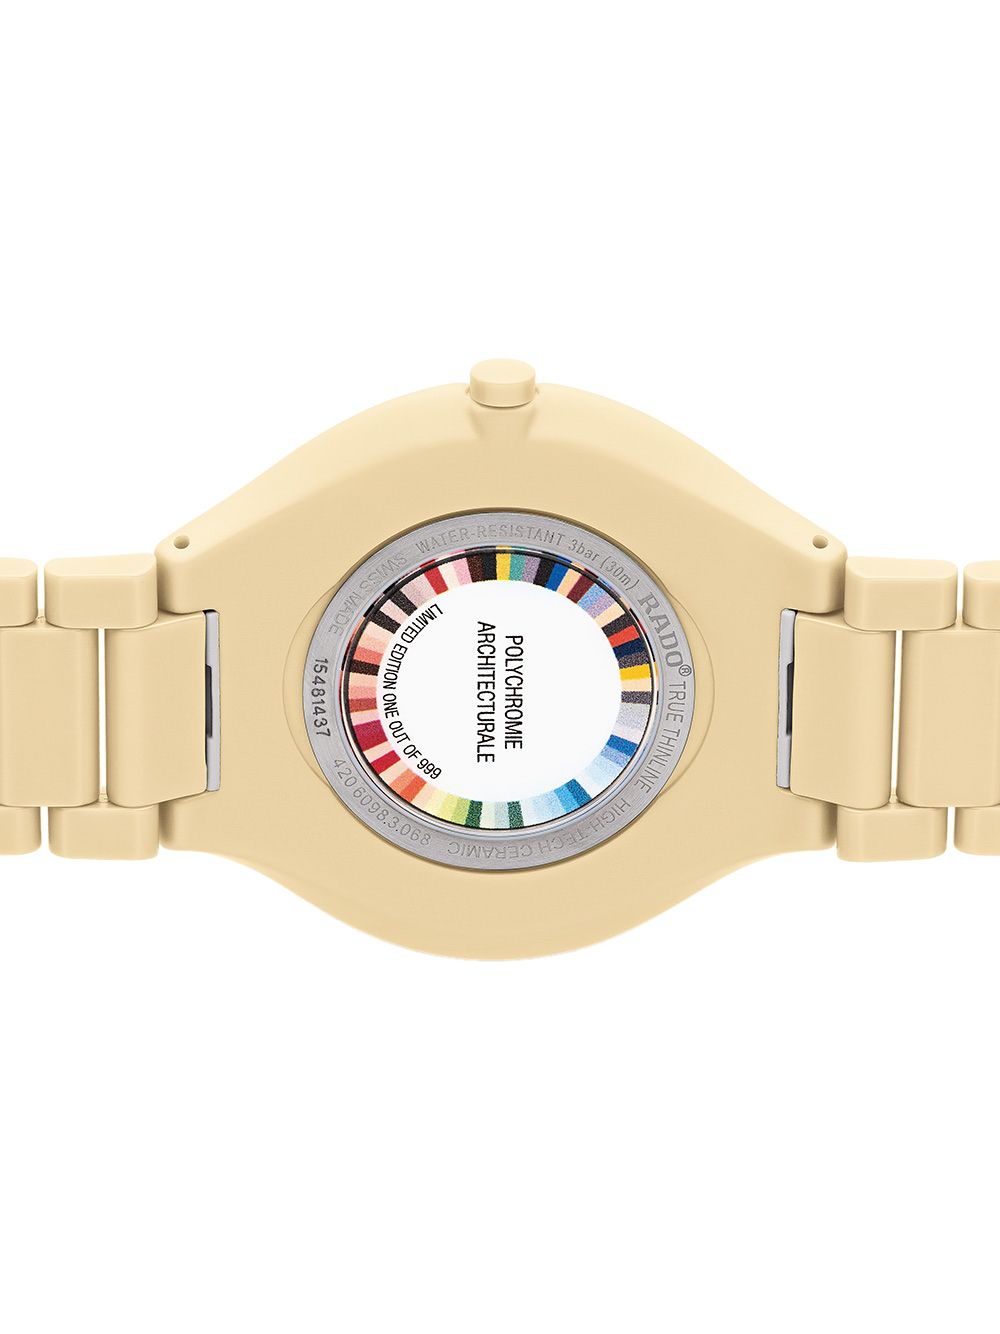 фото Rado наручные часы true thinline les couleurs le corbusier 39 мм